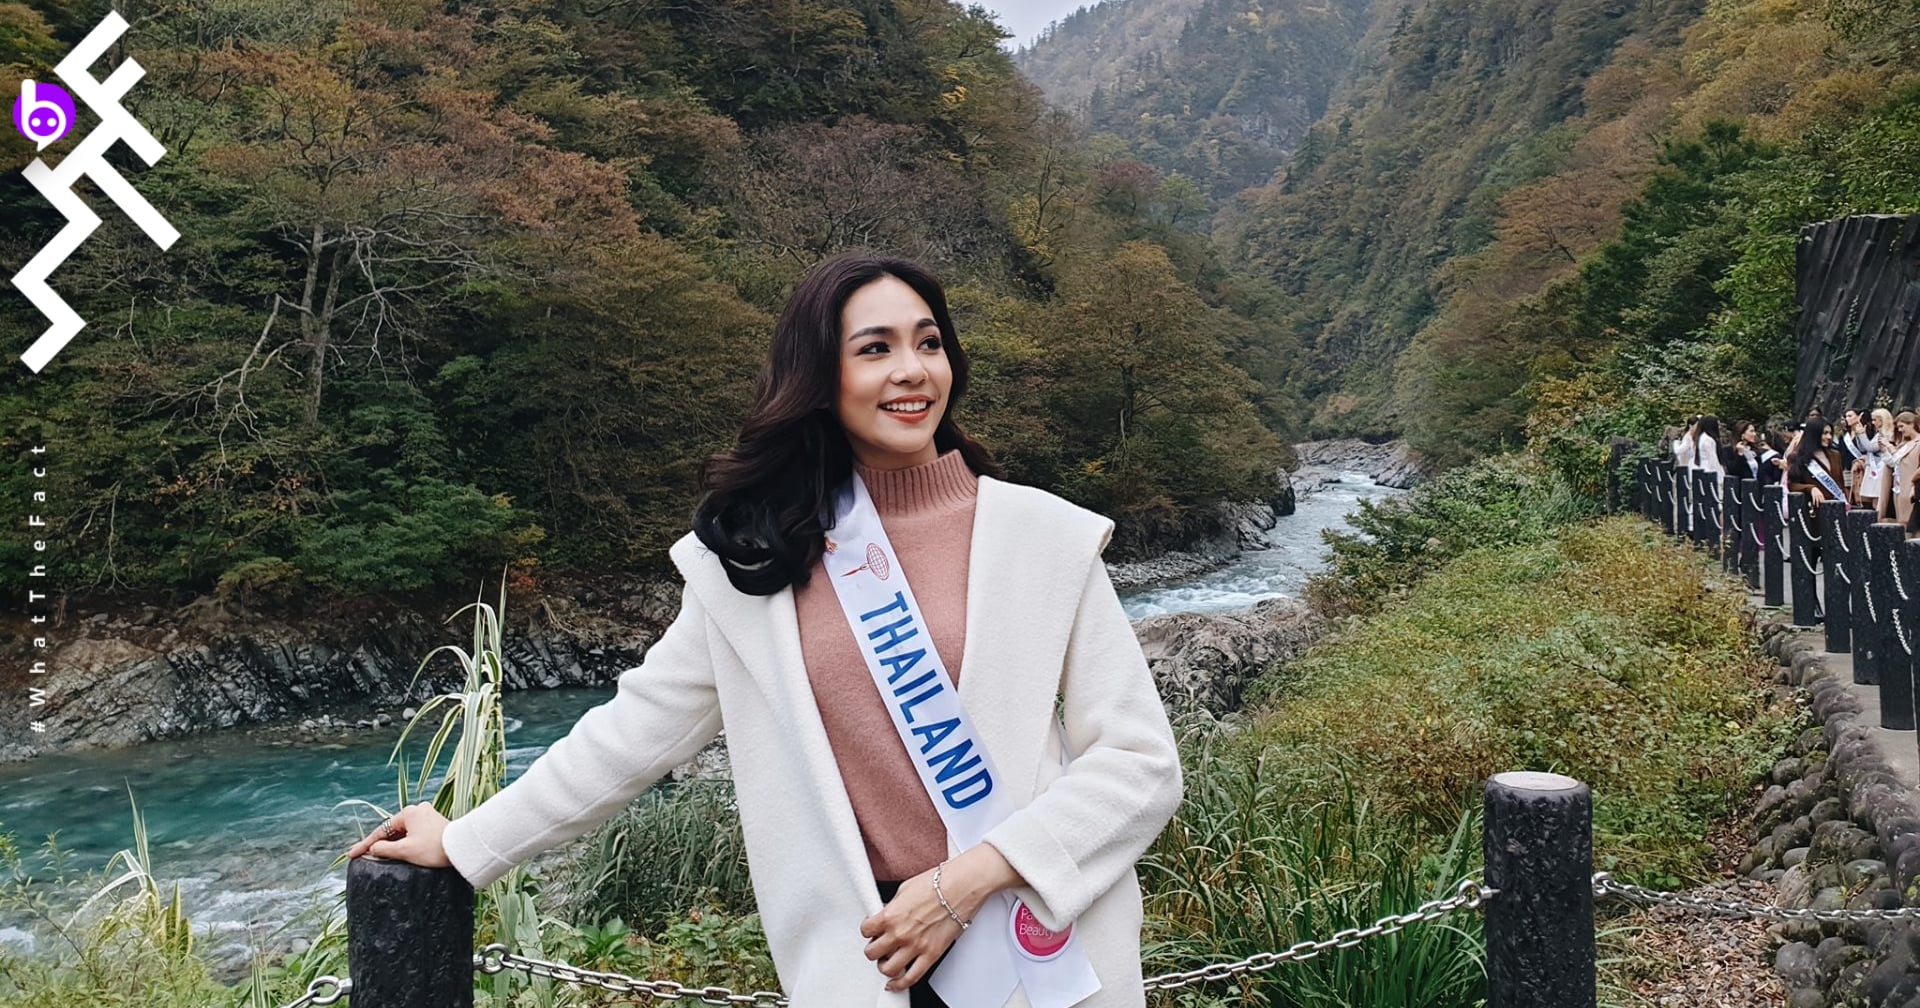 นางงามอันเป็นที่รัก บิ๊นท์ – สิรีธร ลีห์อร่ามวัฒน์ เภสัชกรสาว คว้ารางวัล Miss International 2019 มงแรกของไทย!